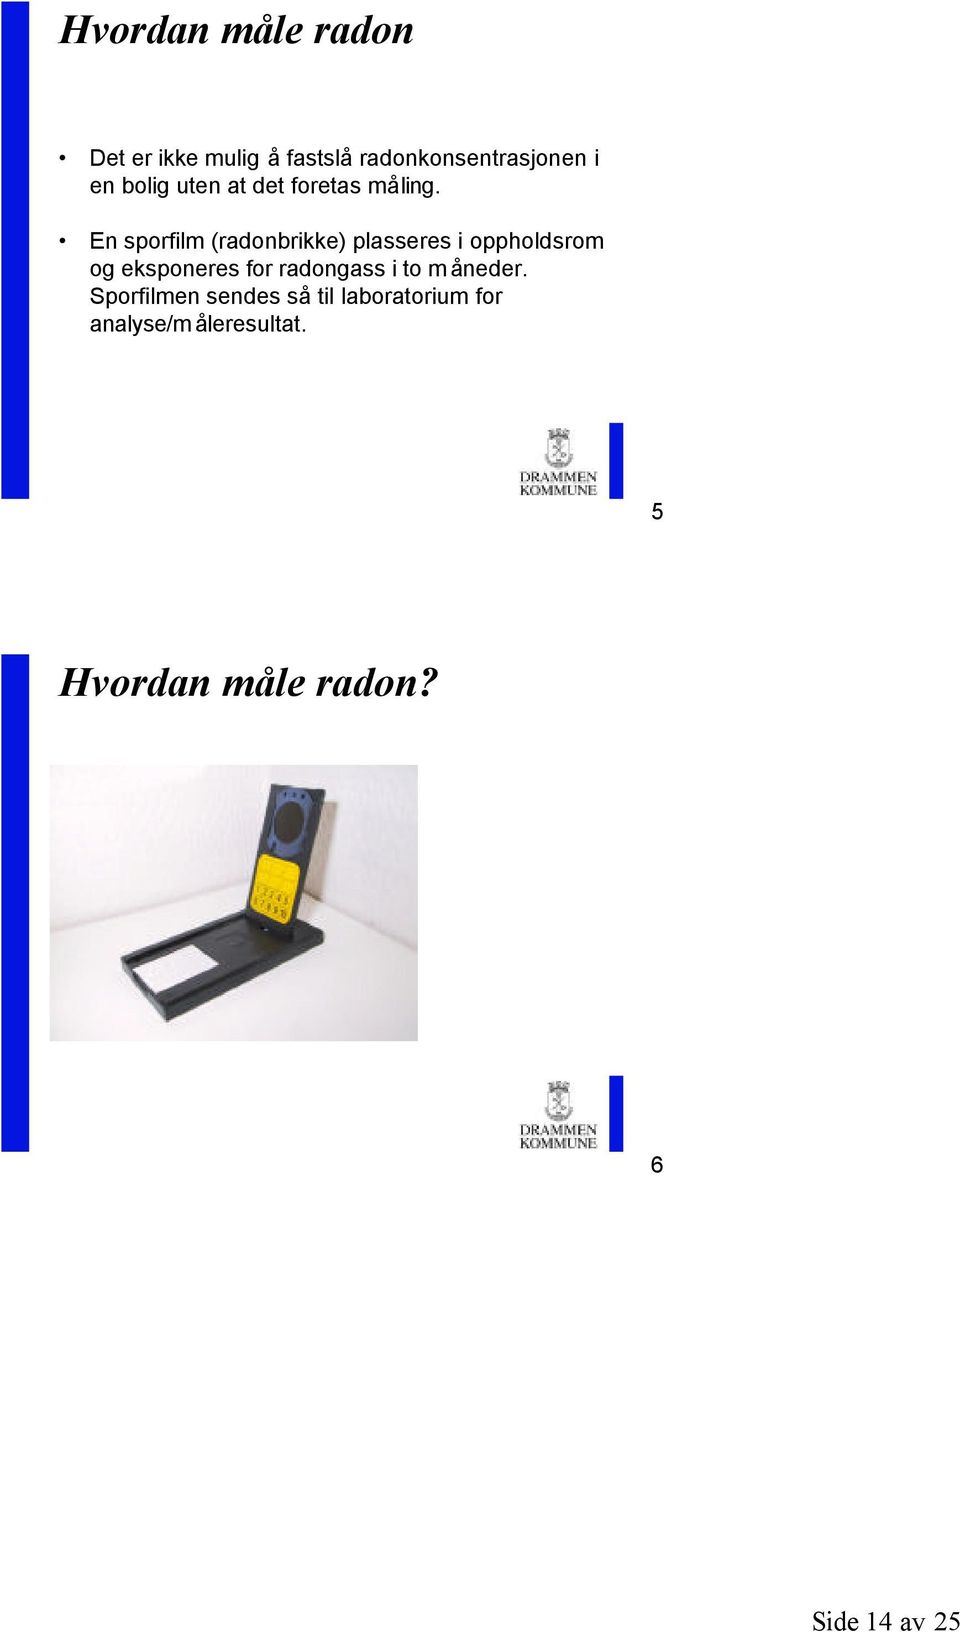 En sporfilm (radonbrikke) plasseres i oppholdsrom og eksponeres for